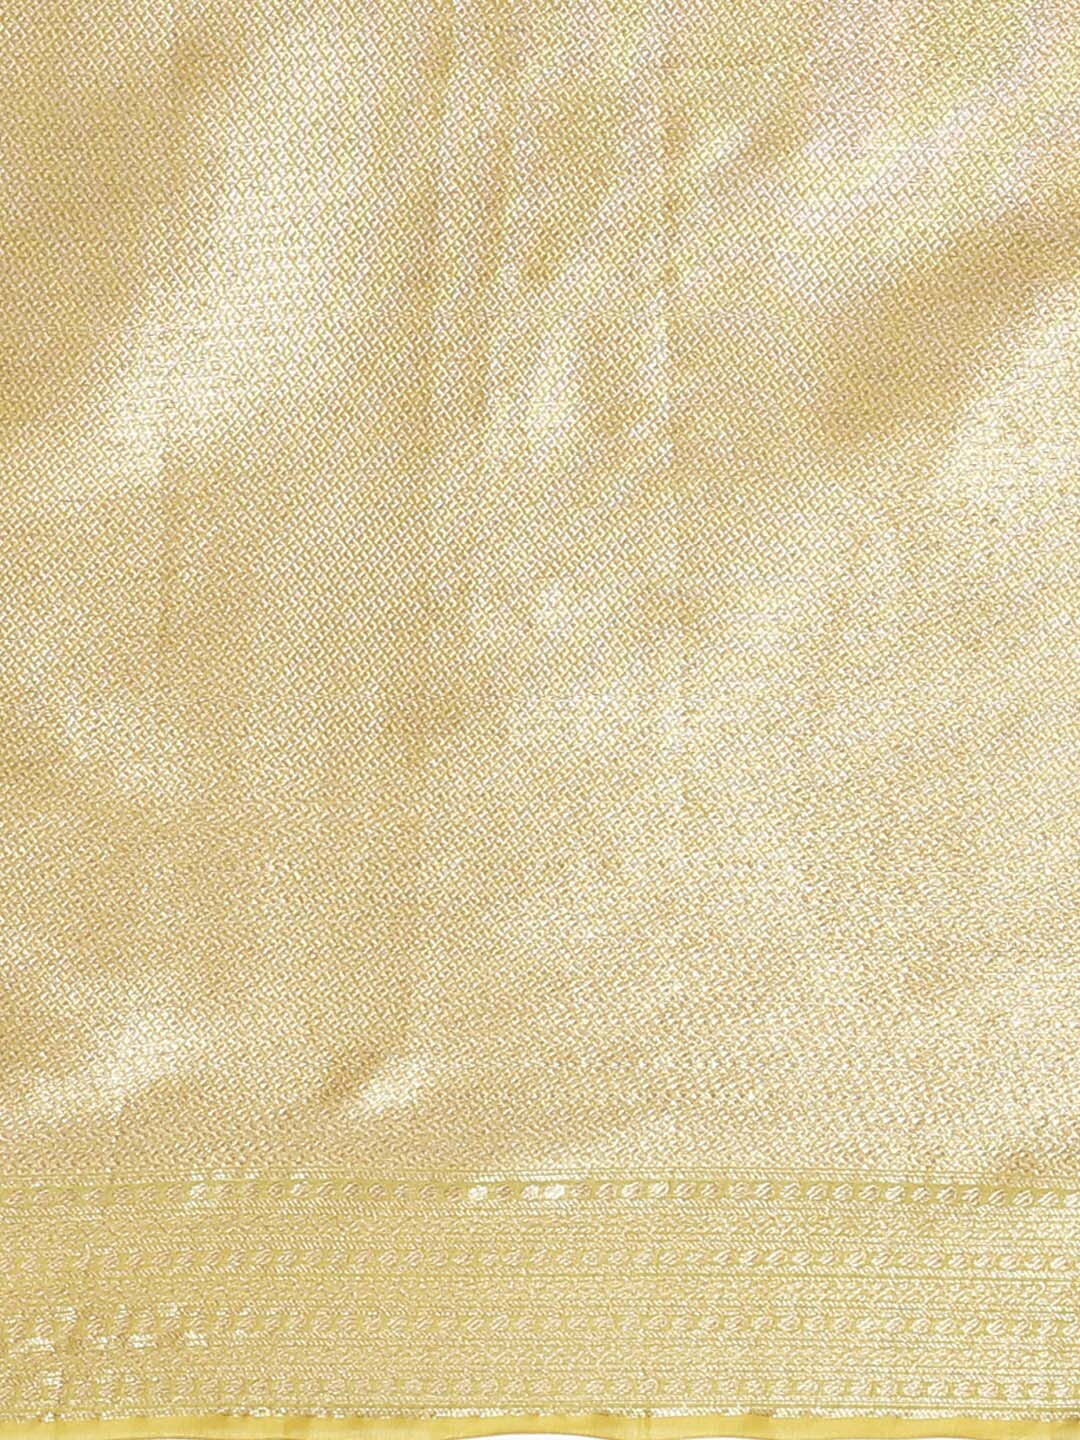 Indethnic Banarasi Lime Green Woven Design Daily Wear Saree - Saree Detail View